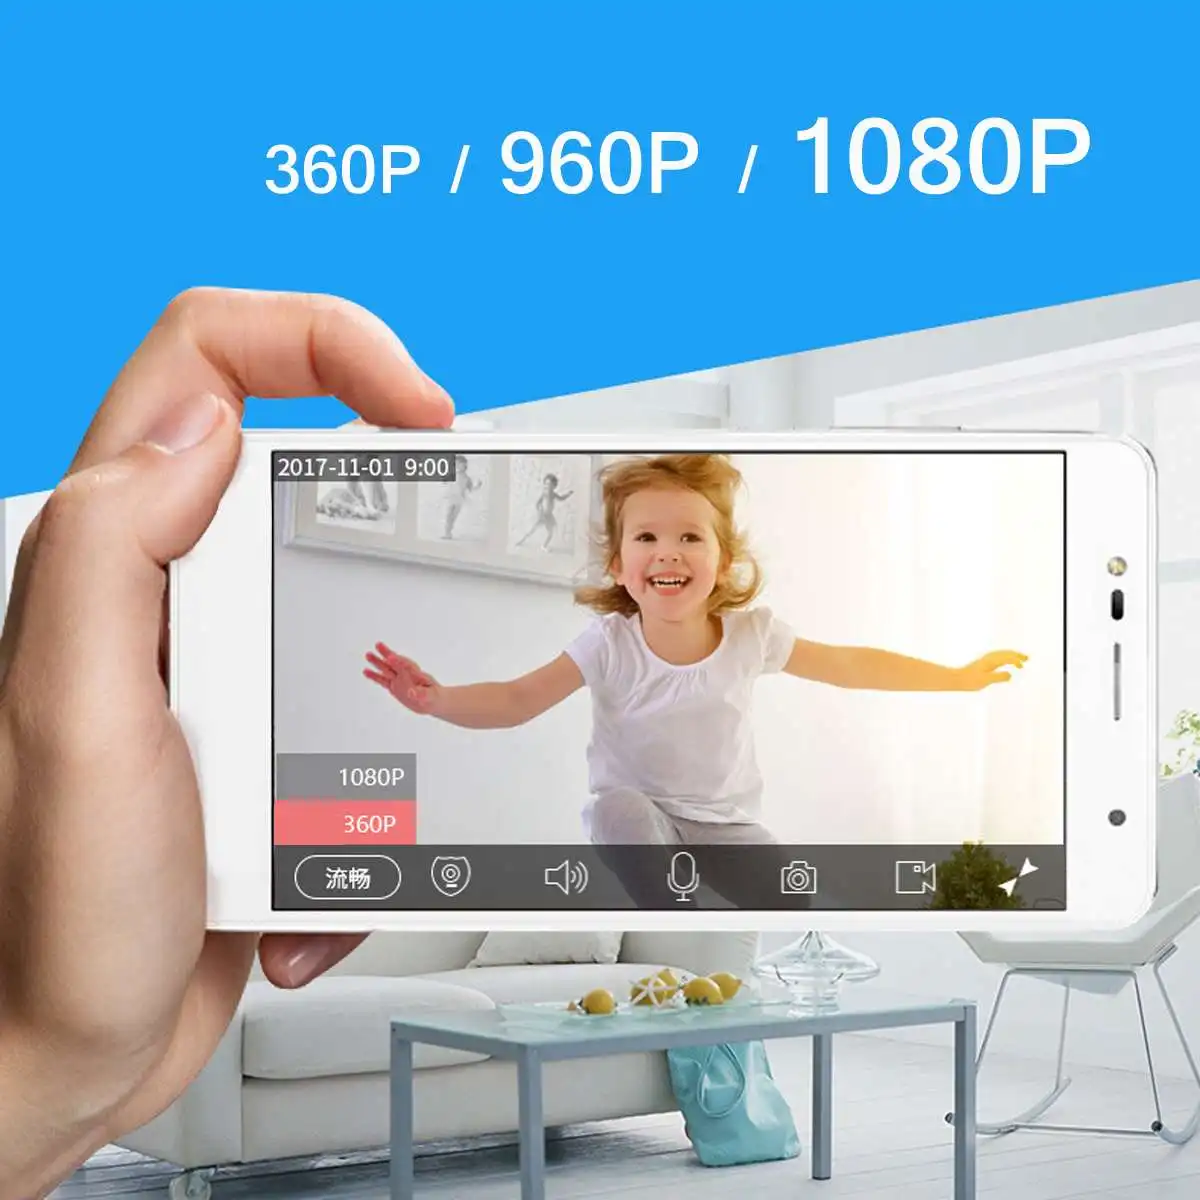 1080 P умная Беспроводная ip-камера аудио Wifi камера видеонаблюдения домашняя сигнализация 2.0MP камера видеонаблюдения внутренняя Камара alexa для echo